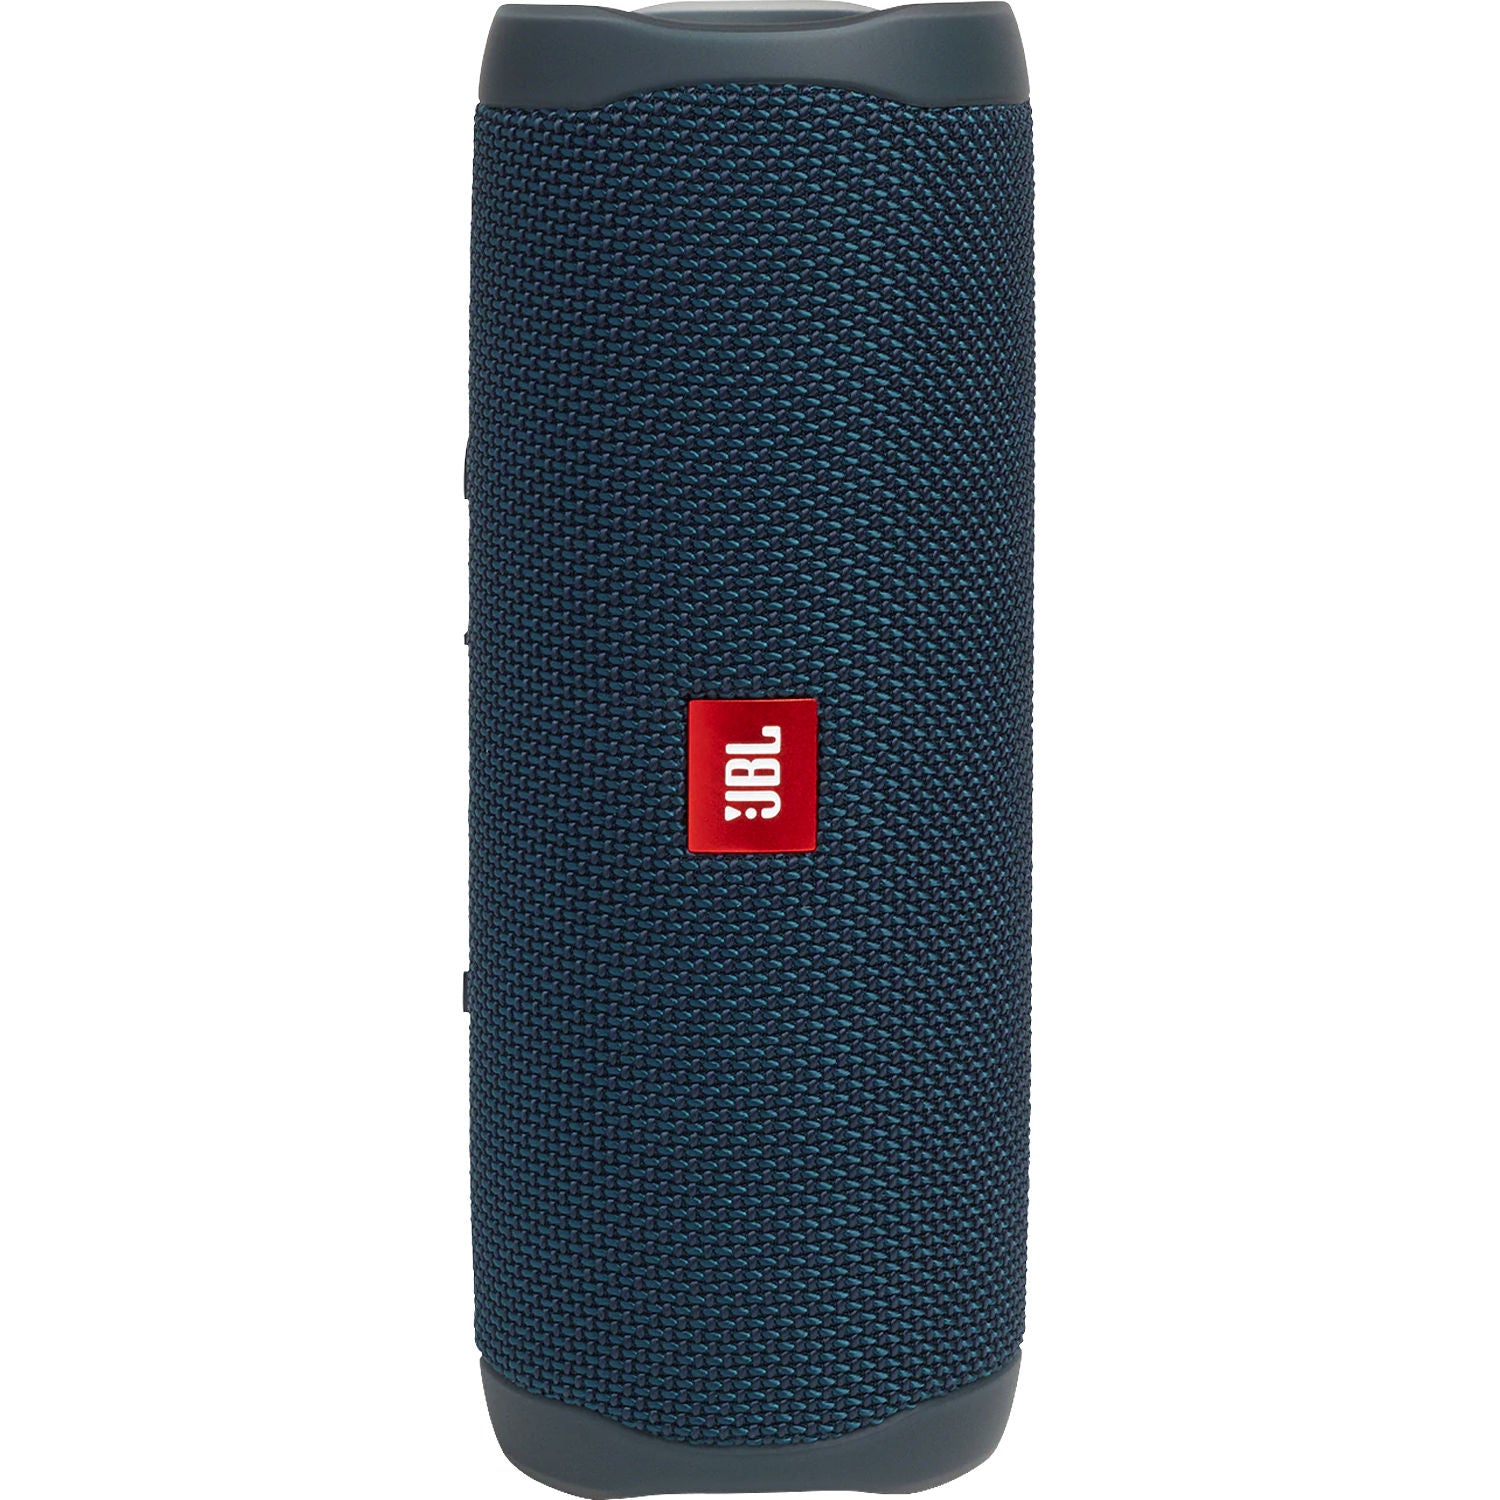 JBL Flip 5 Waterproof Wireless Portable Bluetooth Speaker - GG - Blue (Certified Refurbished)